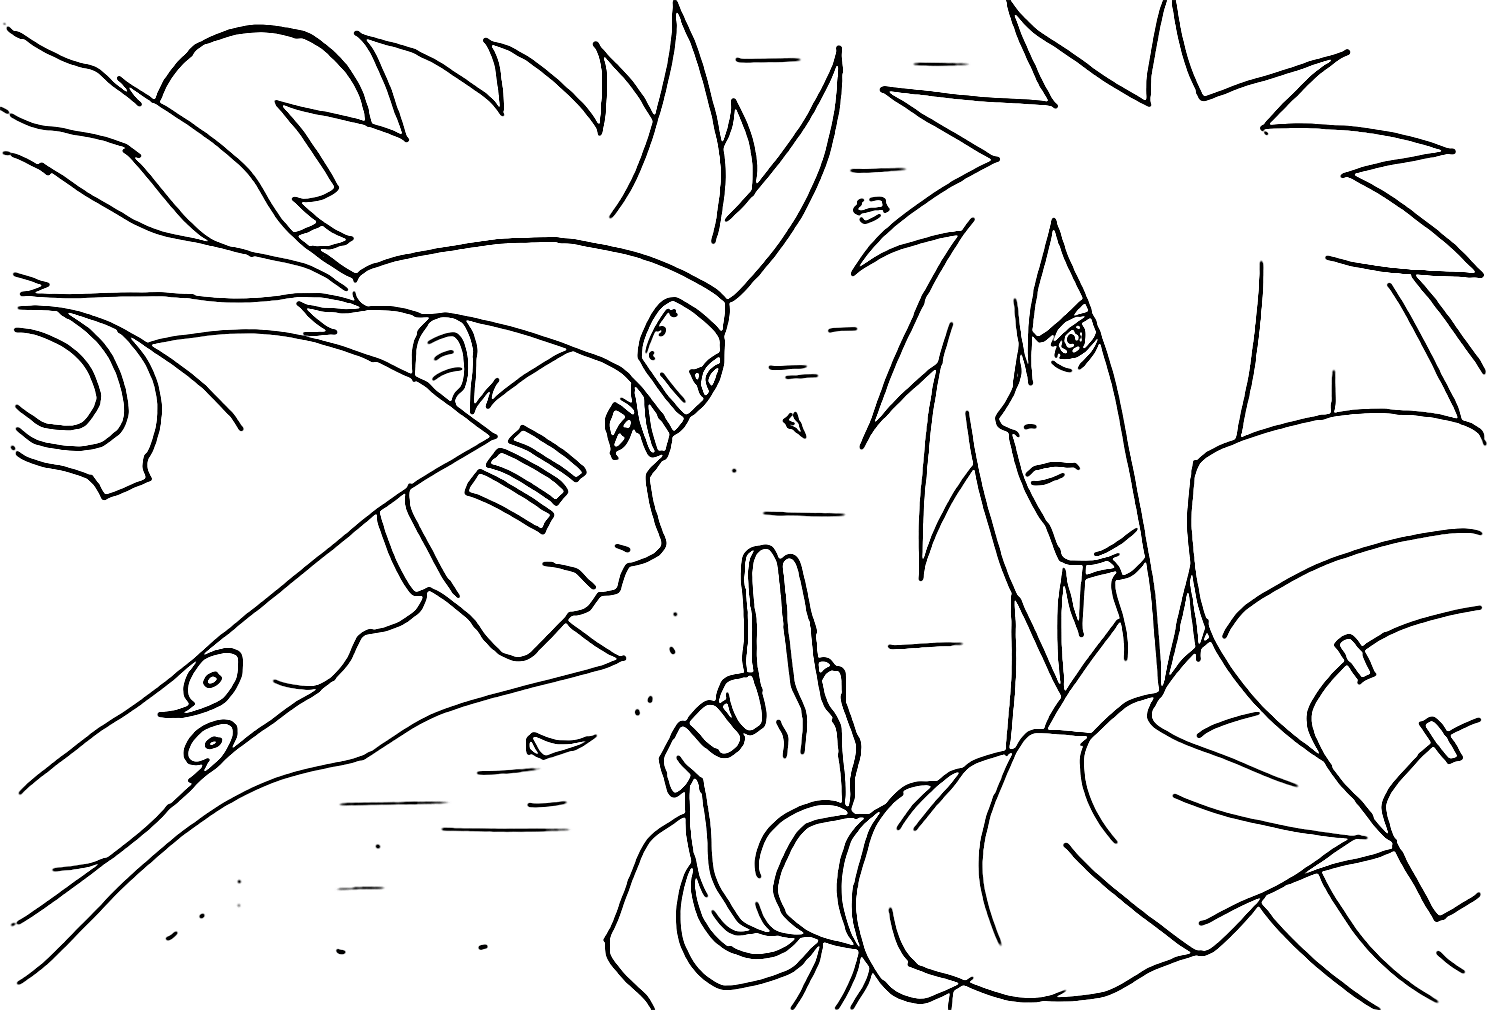 Naruto vs Madara Coloring Page from Uchiha Madara